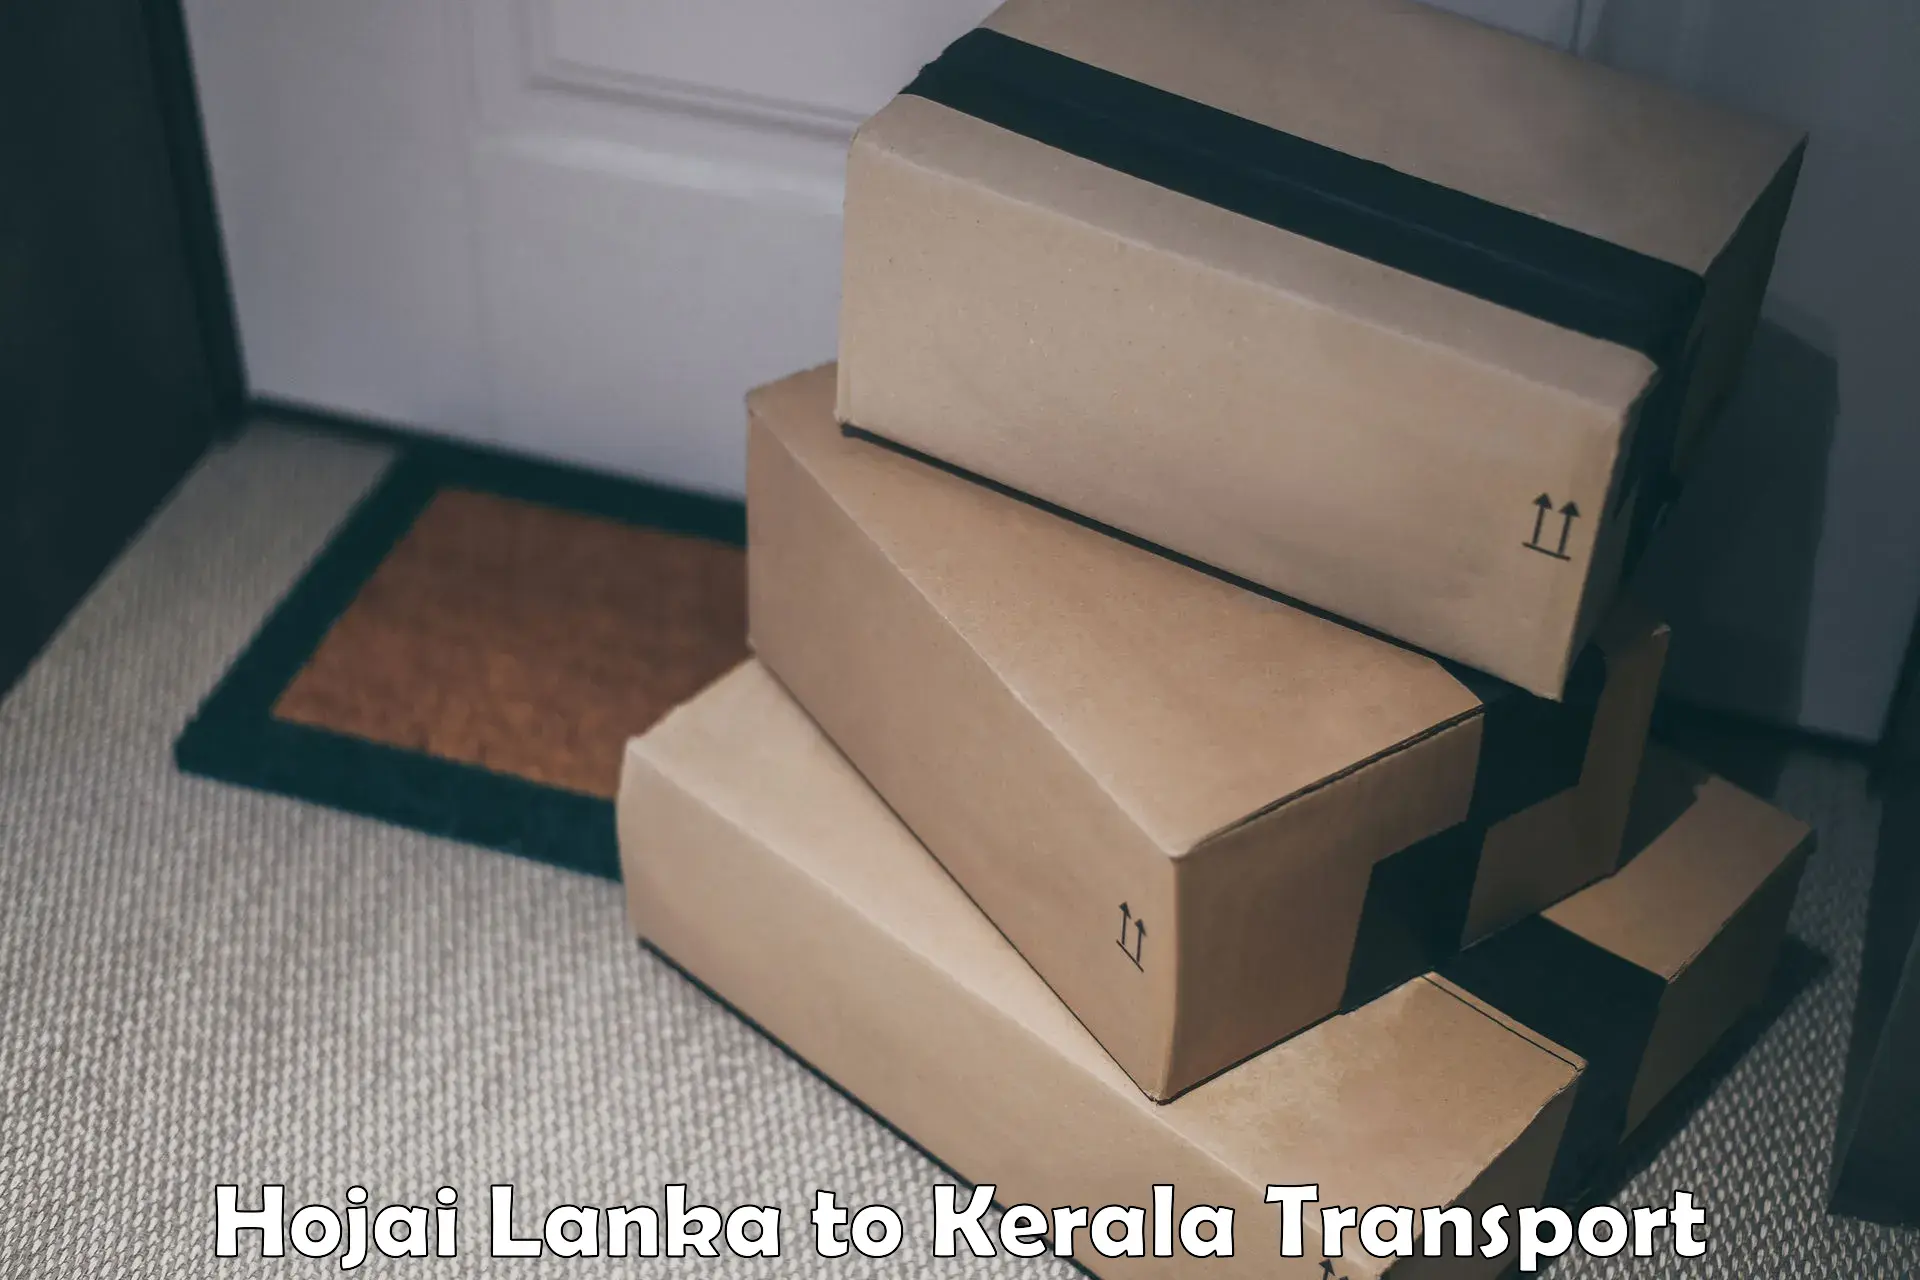 Goods transport services Hojai Lanka to IIIT Kottayam